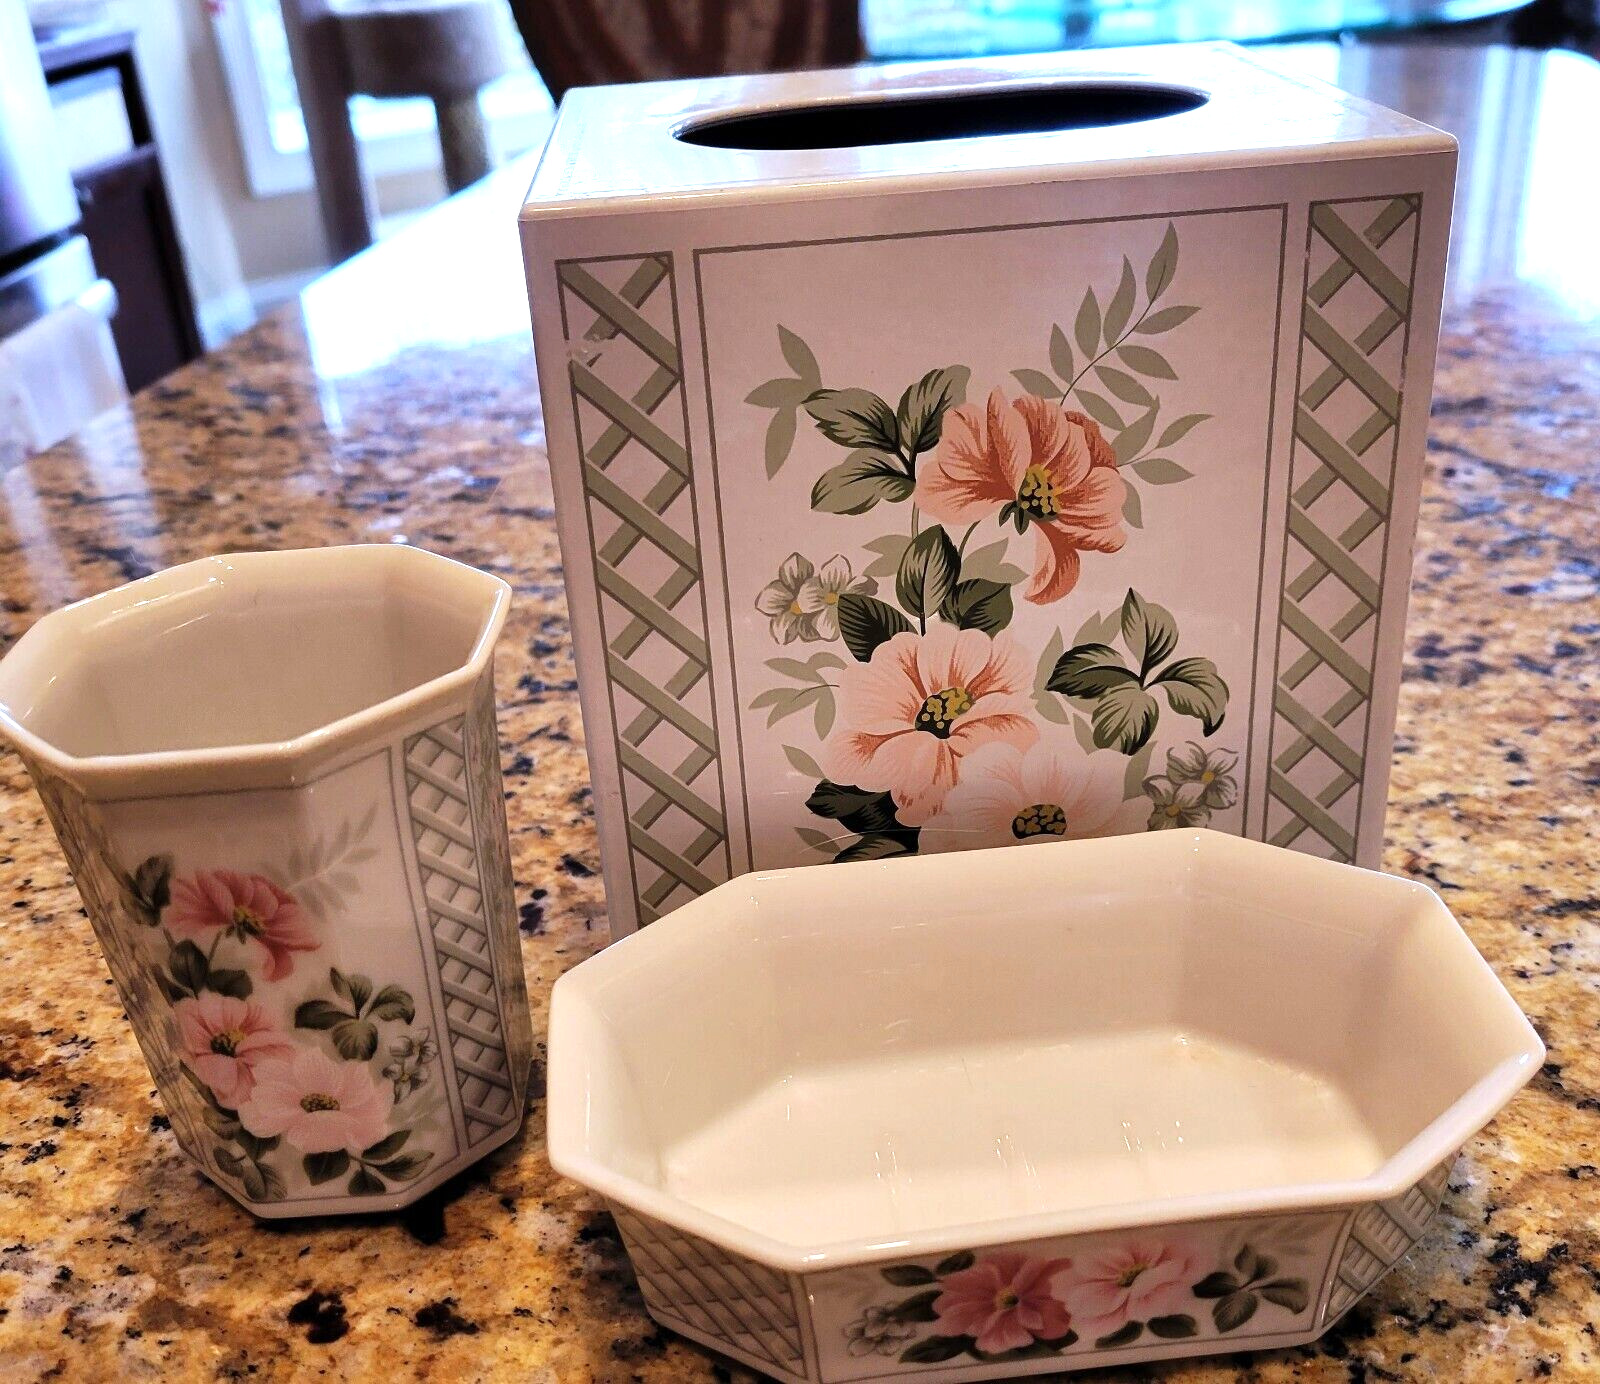 Ceramic Bathroom Accessories Soap, cup, and Plastic Tissue Holder - EUC